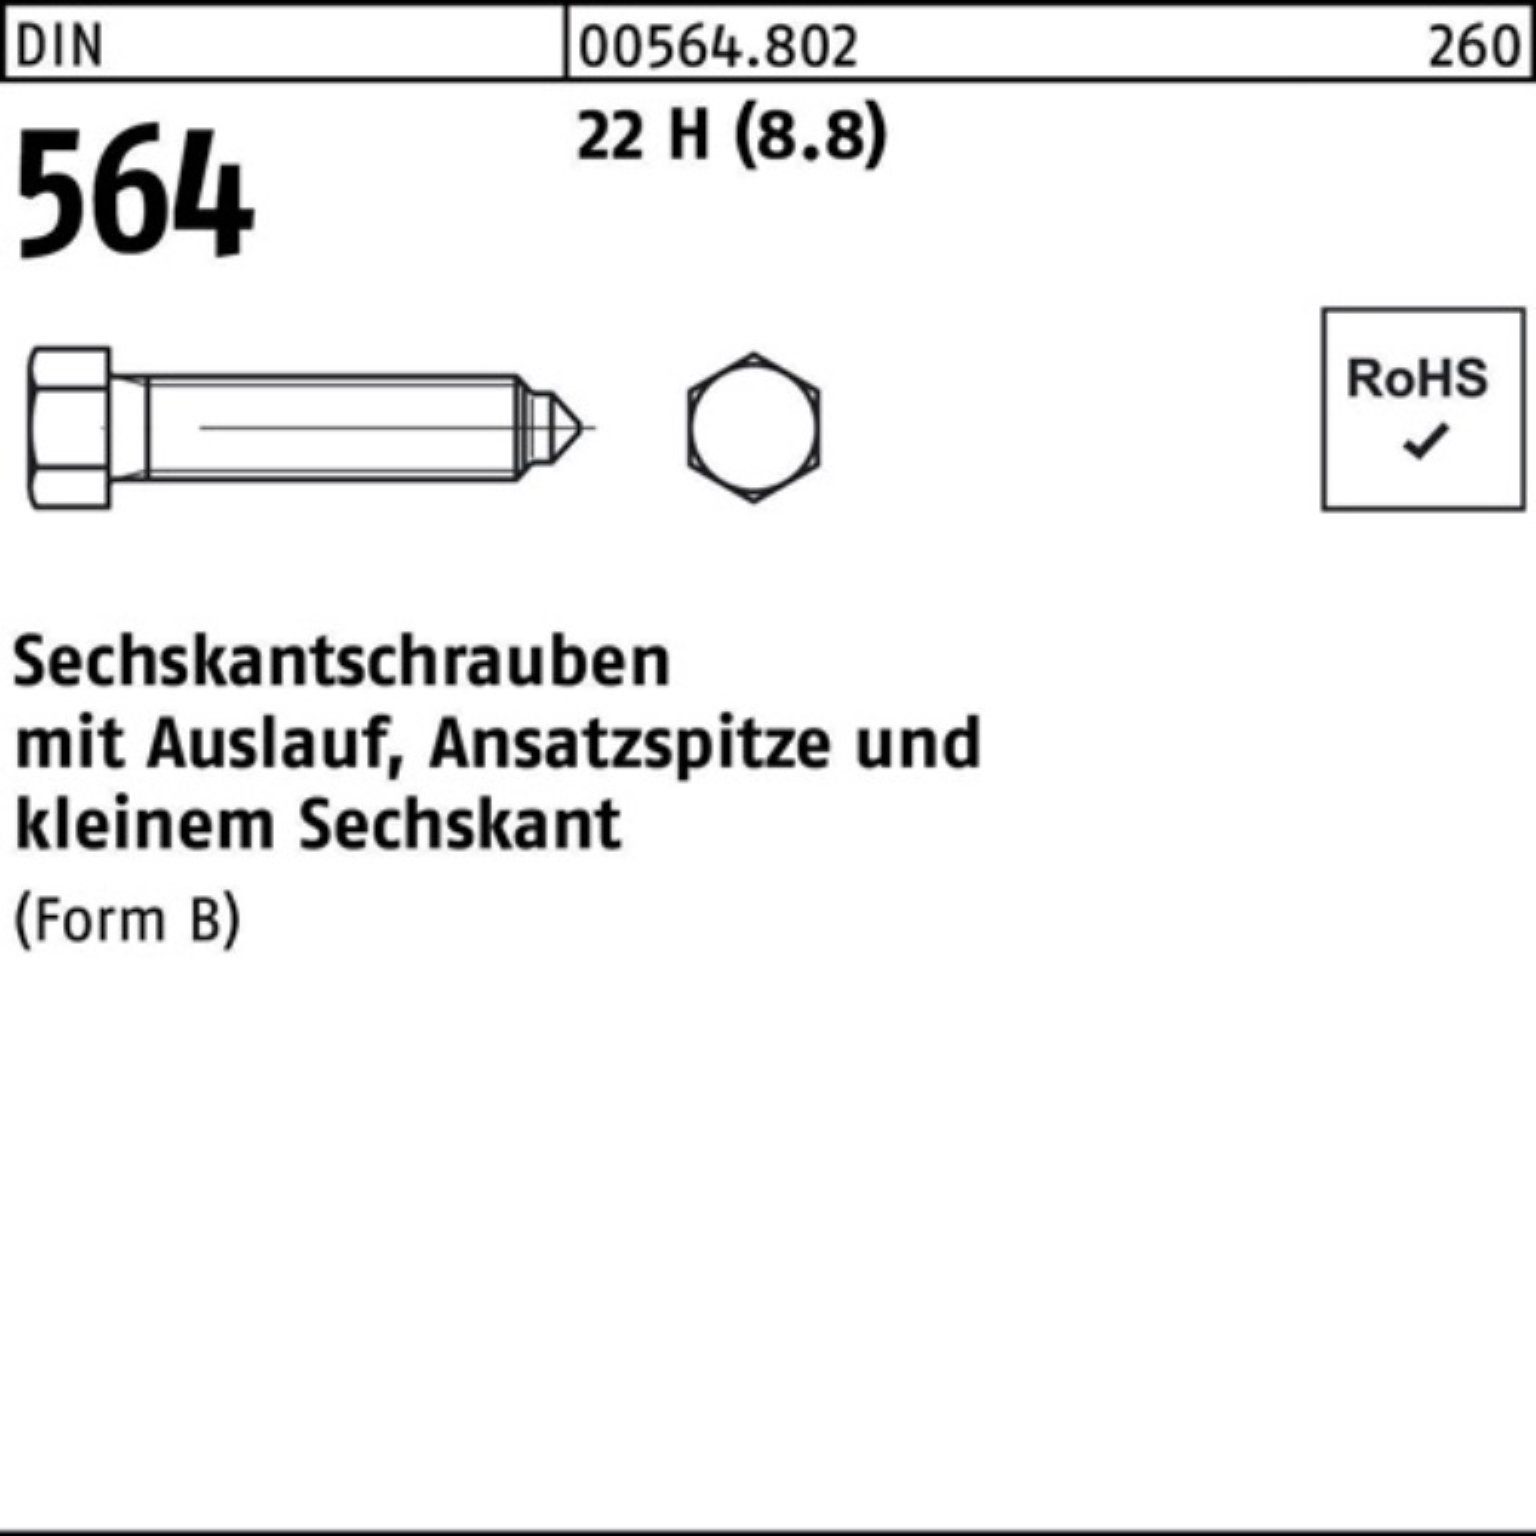 Reyher Sechskantschraube 100er Pack Sechskantschraube Ansatzspitze/Auslauf 12x DIN 35 564 BM 22